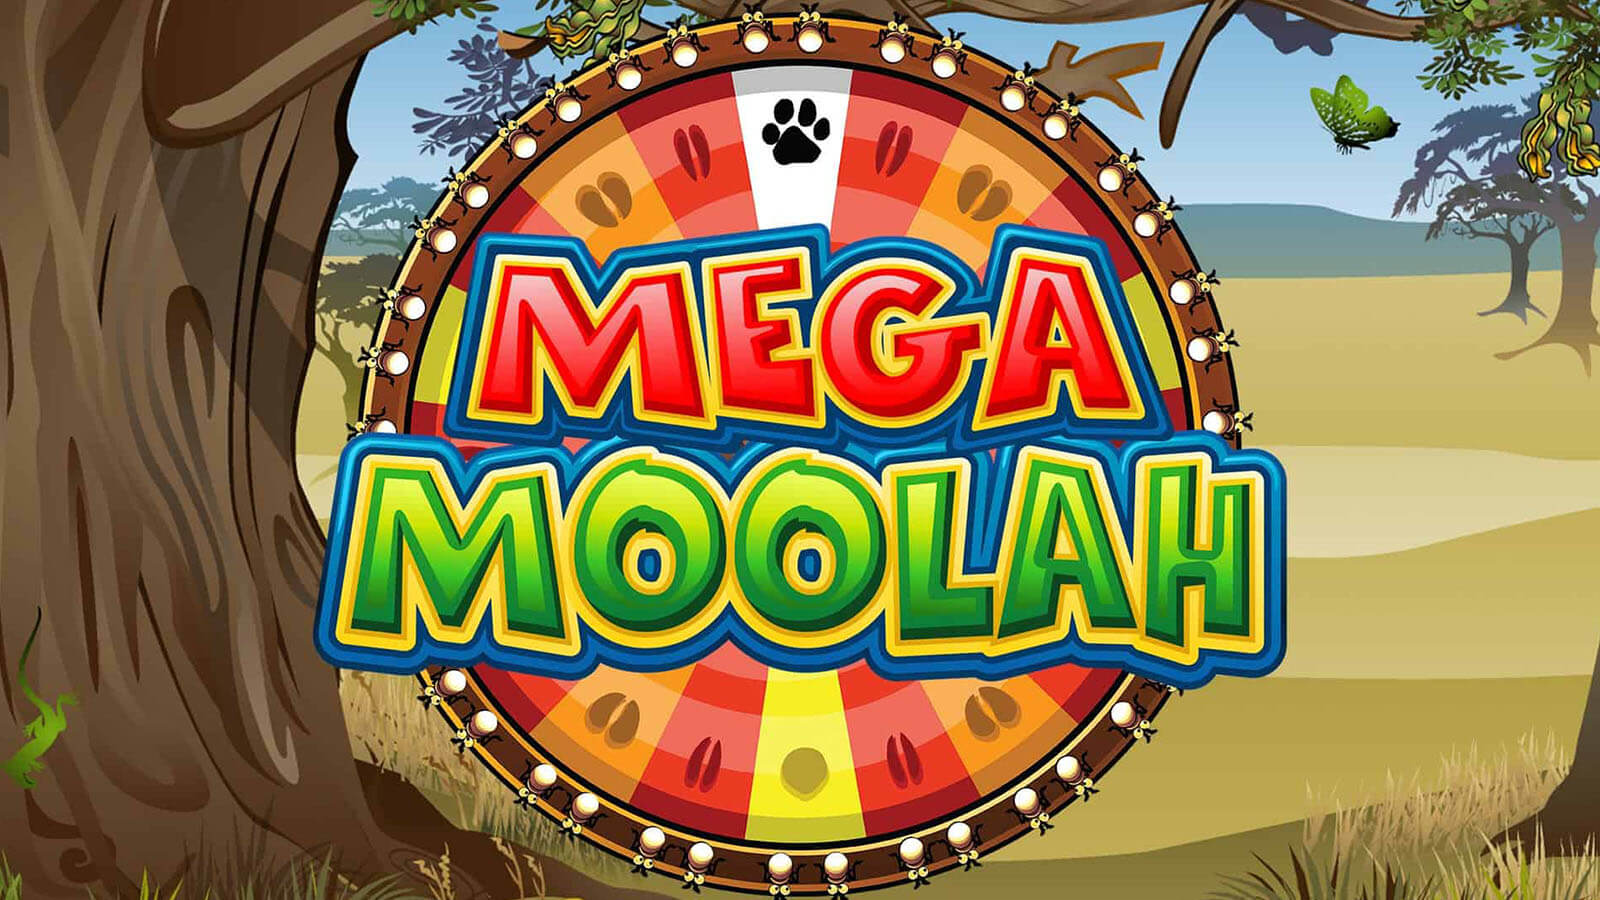 $16.5 million - Mega Moolah winner